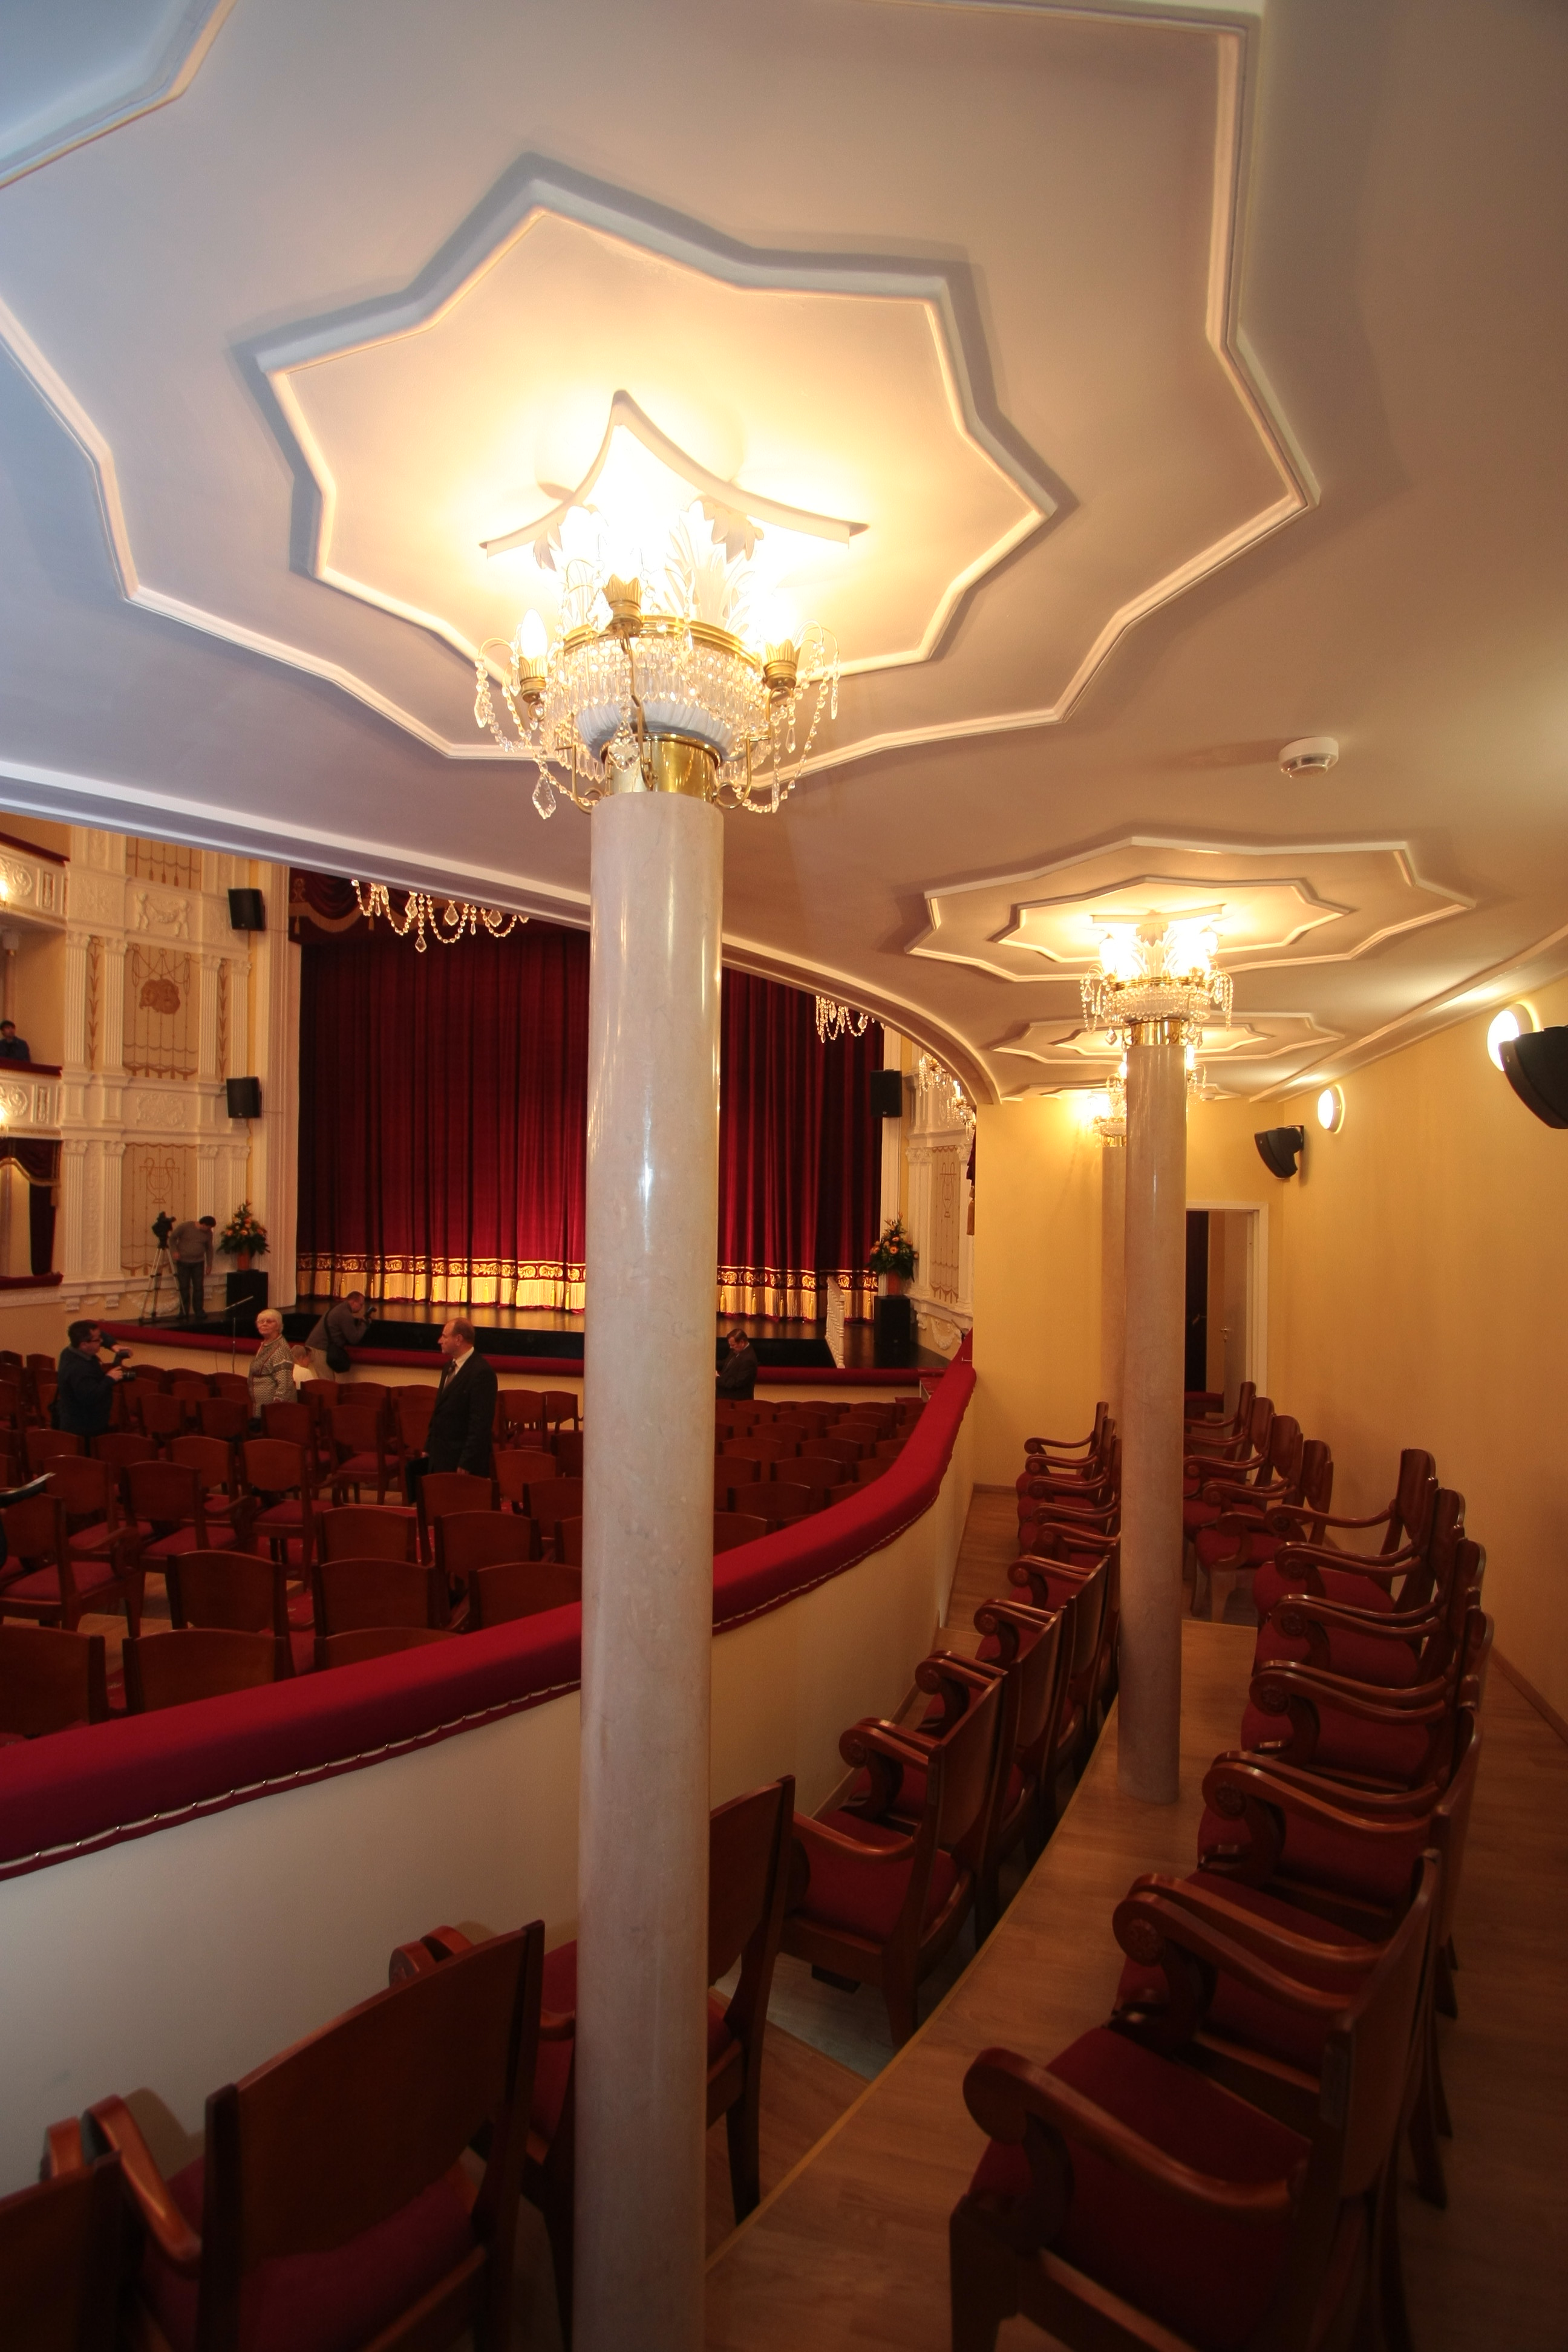 Музыкальный театр Республики Карелия